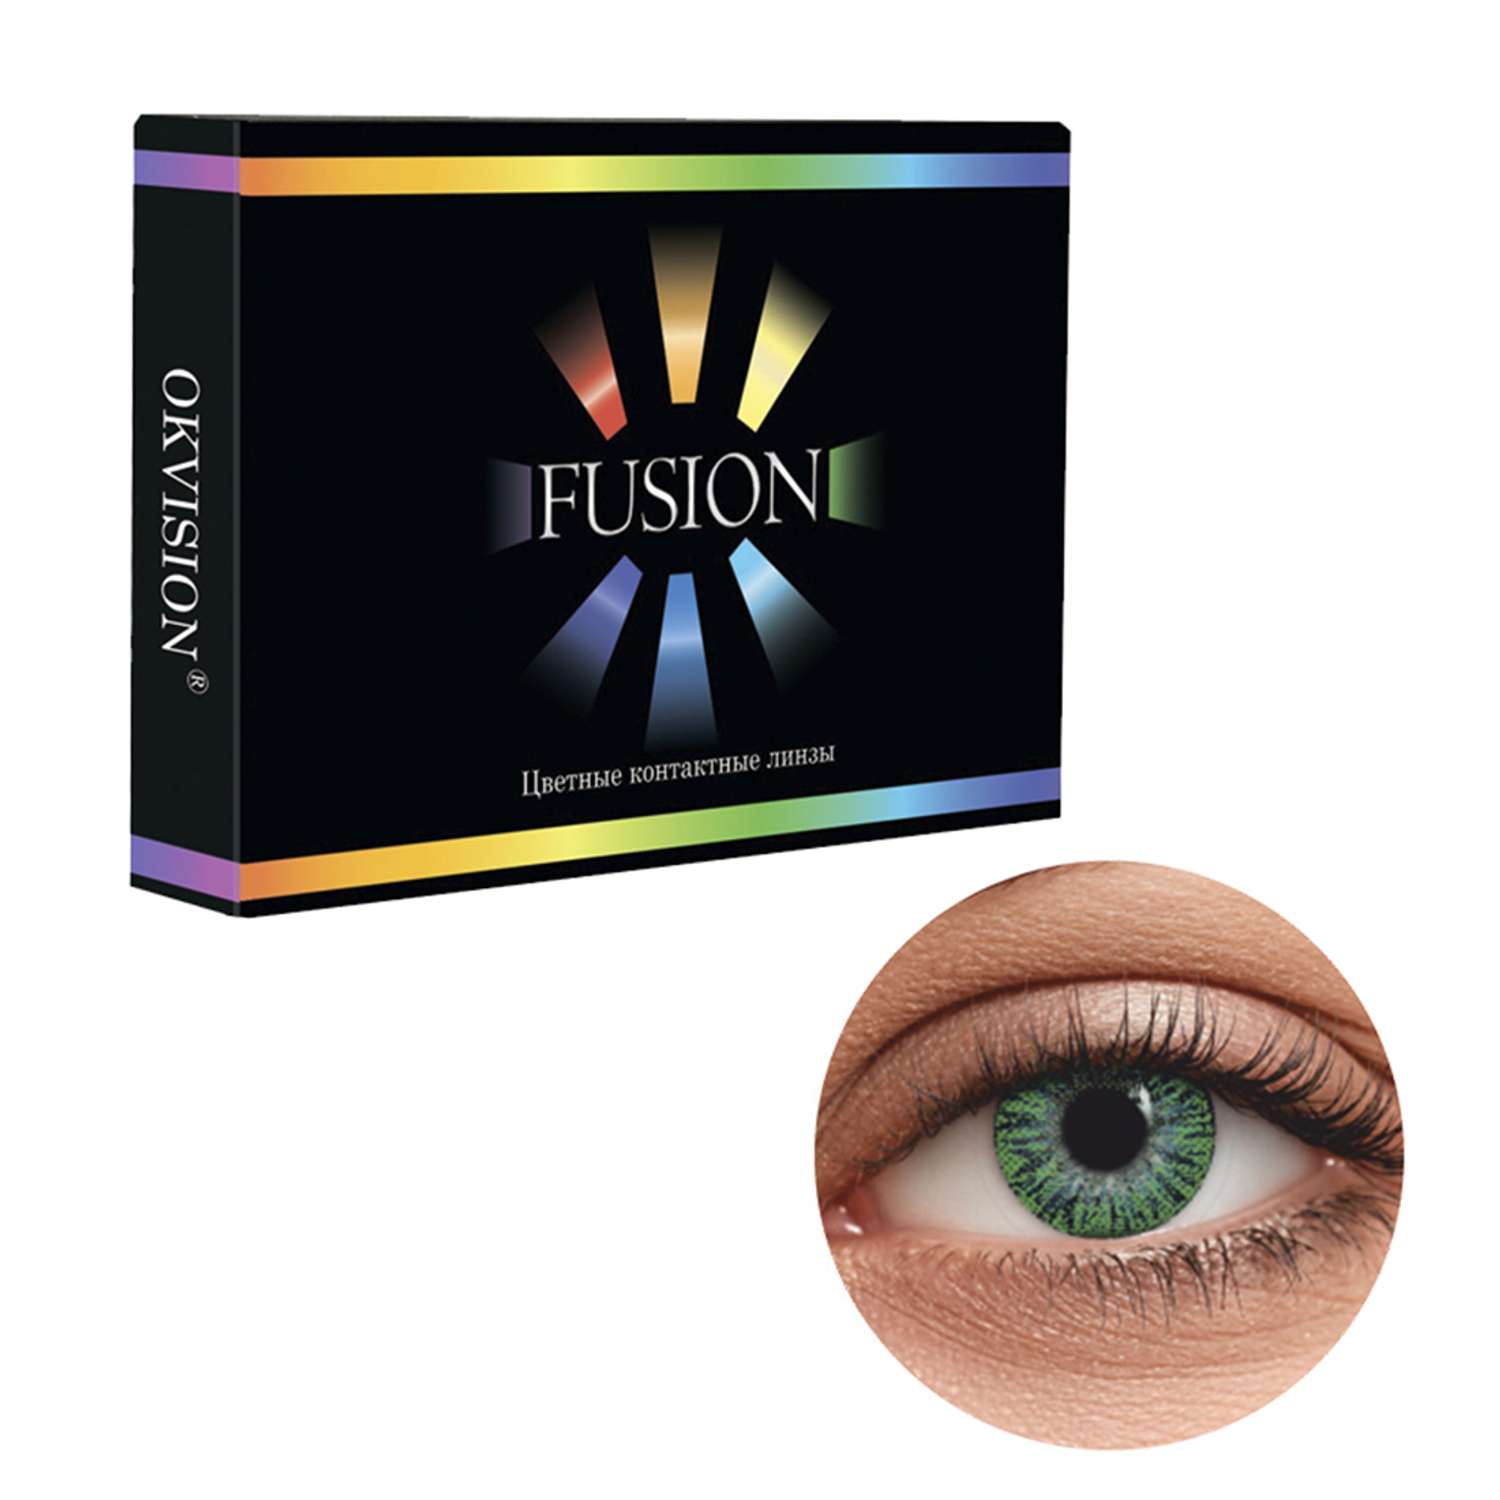 Цветные контактные линзы OKVision Fusion monthly R 8.6 -3.50 цвет Lime 2 шт 1 месяц - фото 1